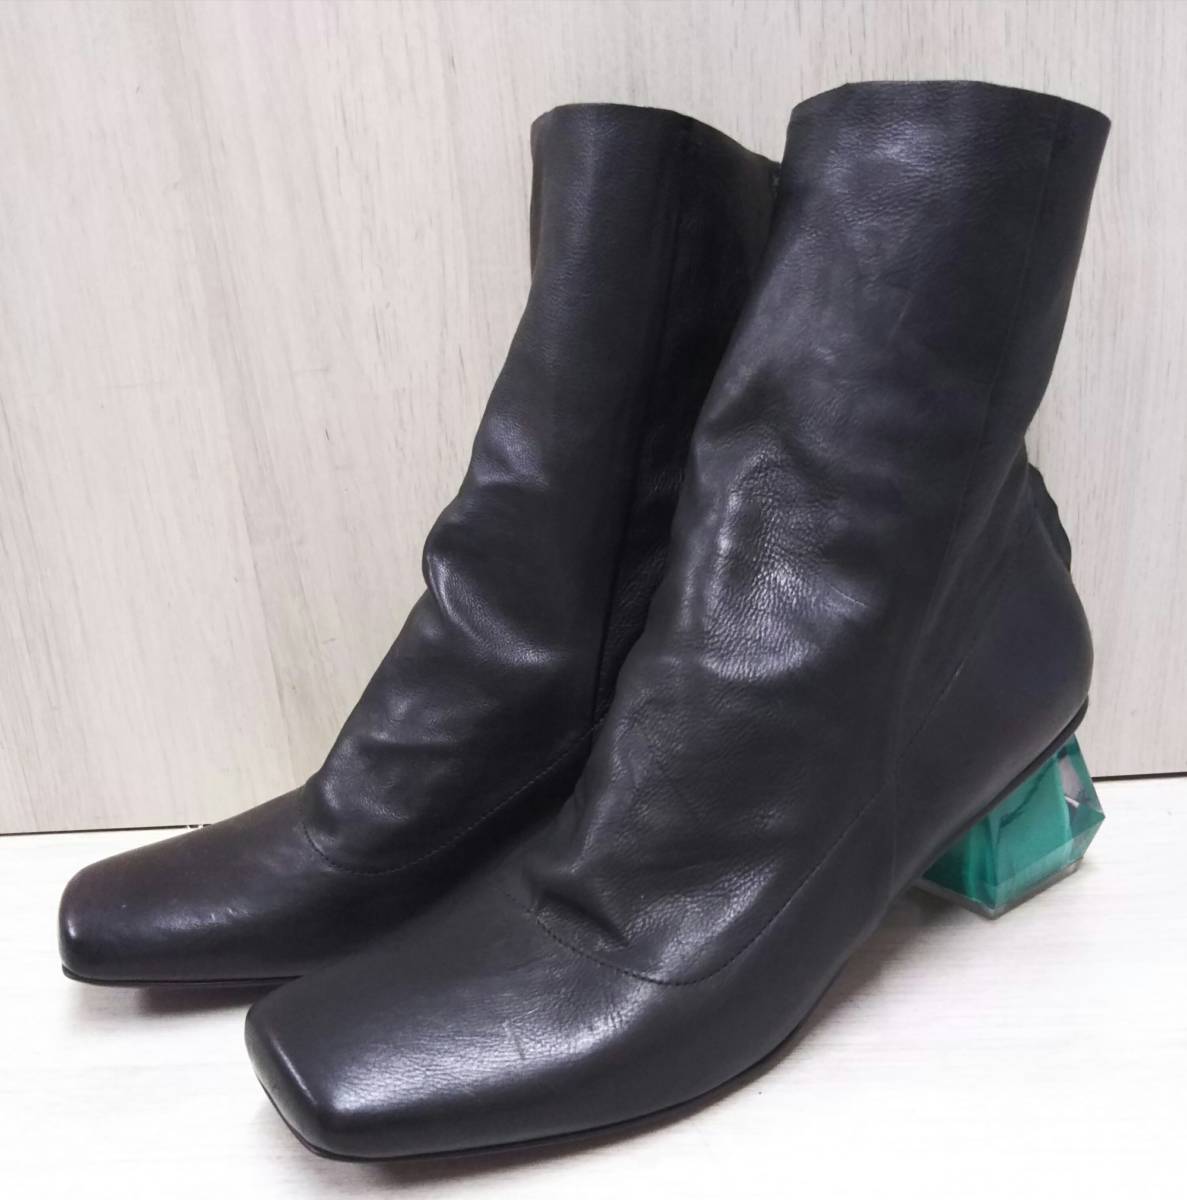 MANA マナ 1枚革ブーツ 517041 アクリルヒール(内側グリーン) サイズ40(約25cm) ブラック 黒 ショートブーツ